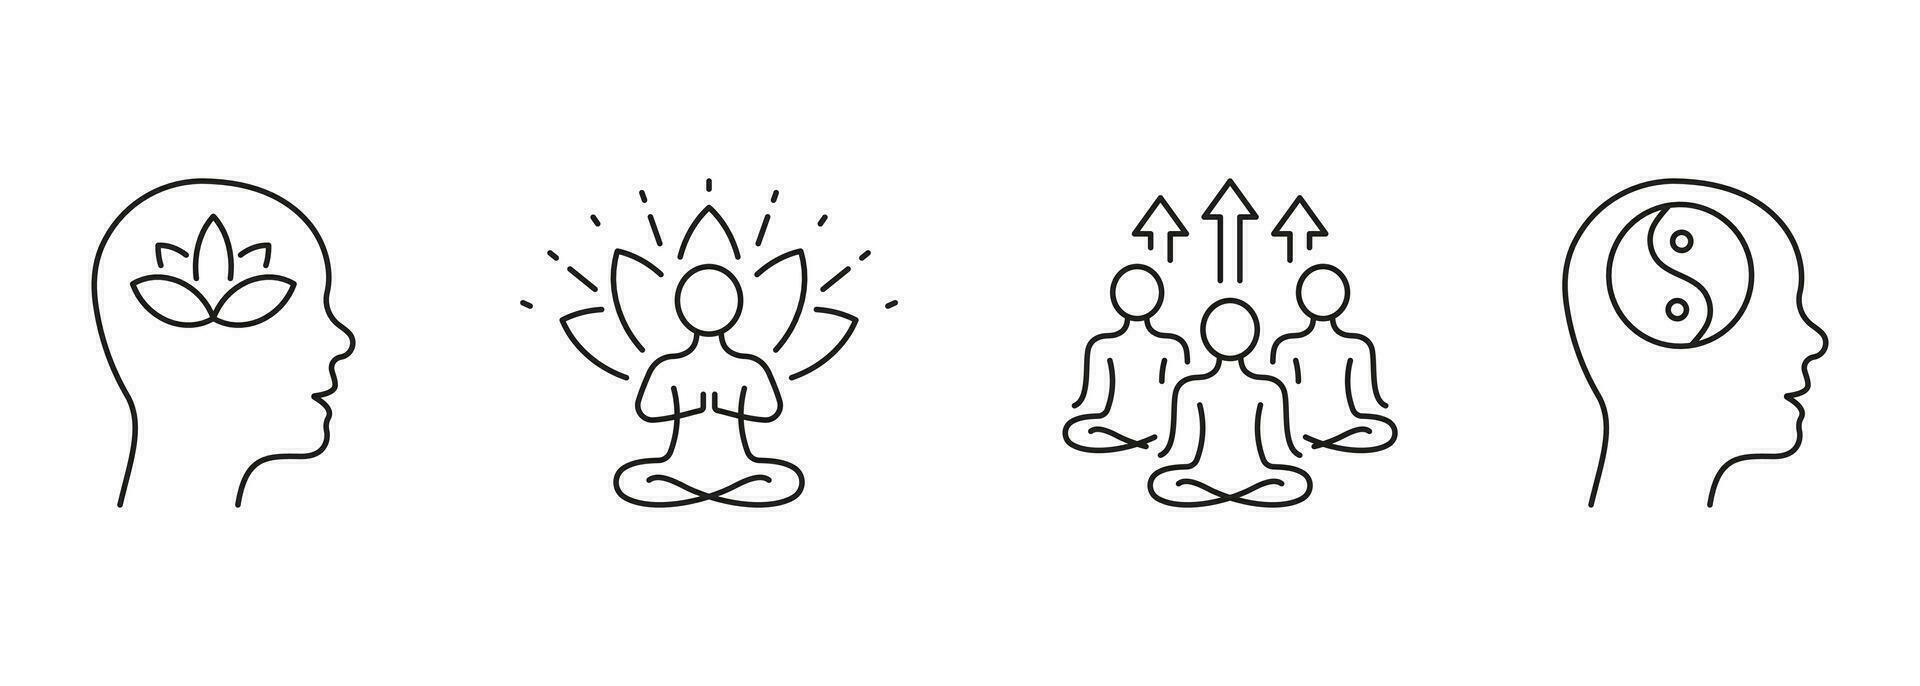 Yoga und Gesundheit Linie Symbol Satz. Person meditieren im Lotus Position linear Piktogramm. Wellness und Ruhe Verstand Gliederung unterzeichnen. Yin Yang Symbol, Zen Pose. editierbar Schlaganfall. isoliert Vektor Illustration.